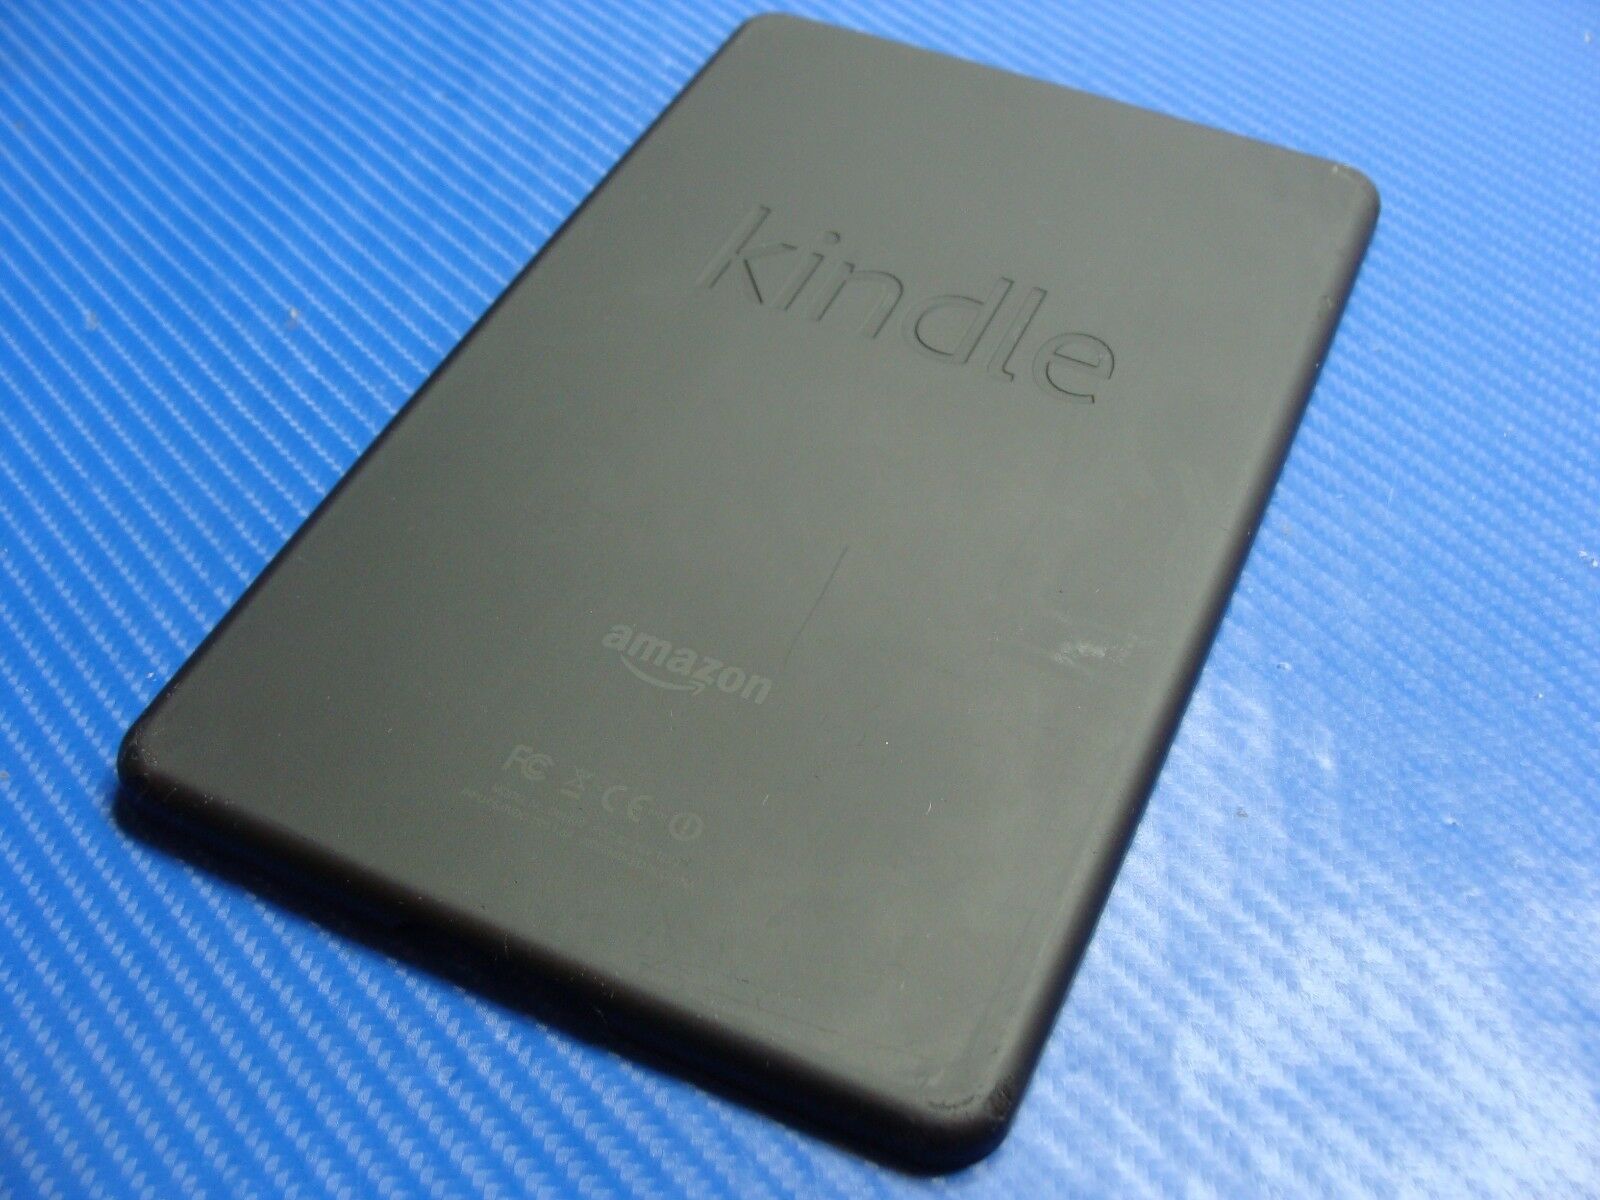 Amazon Kindle 7